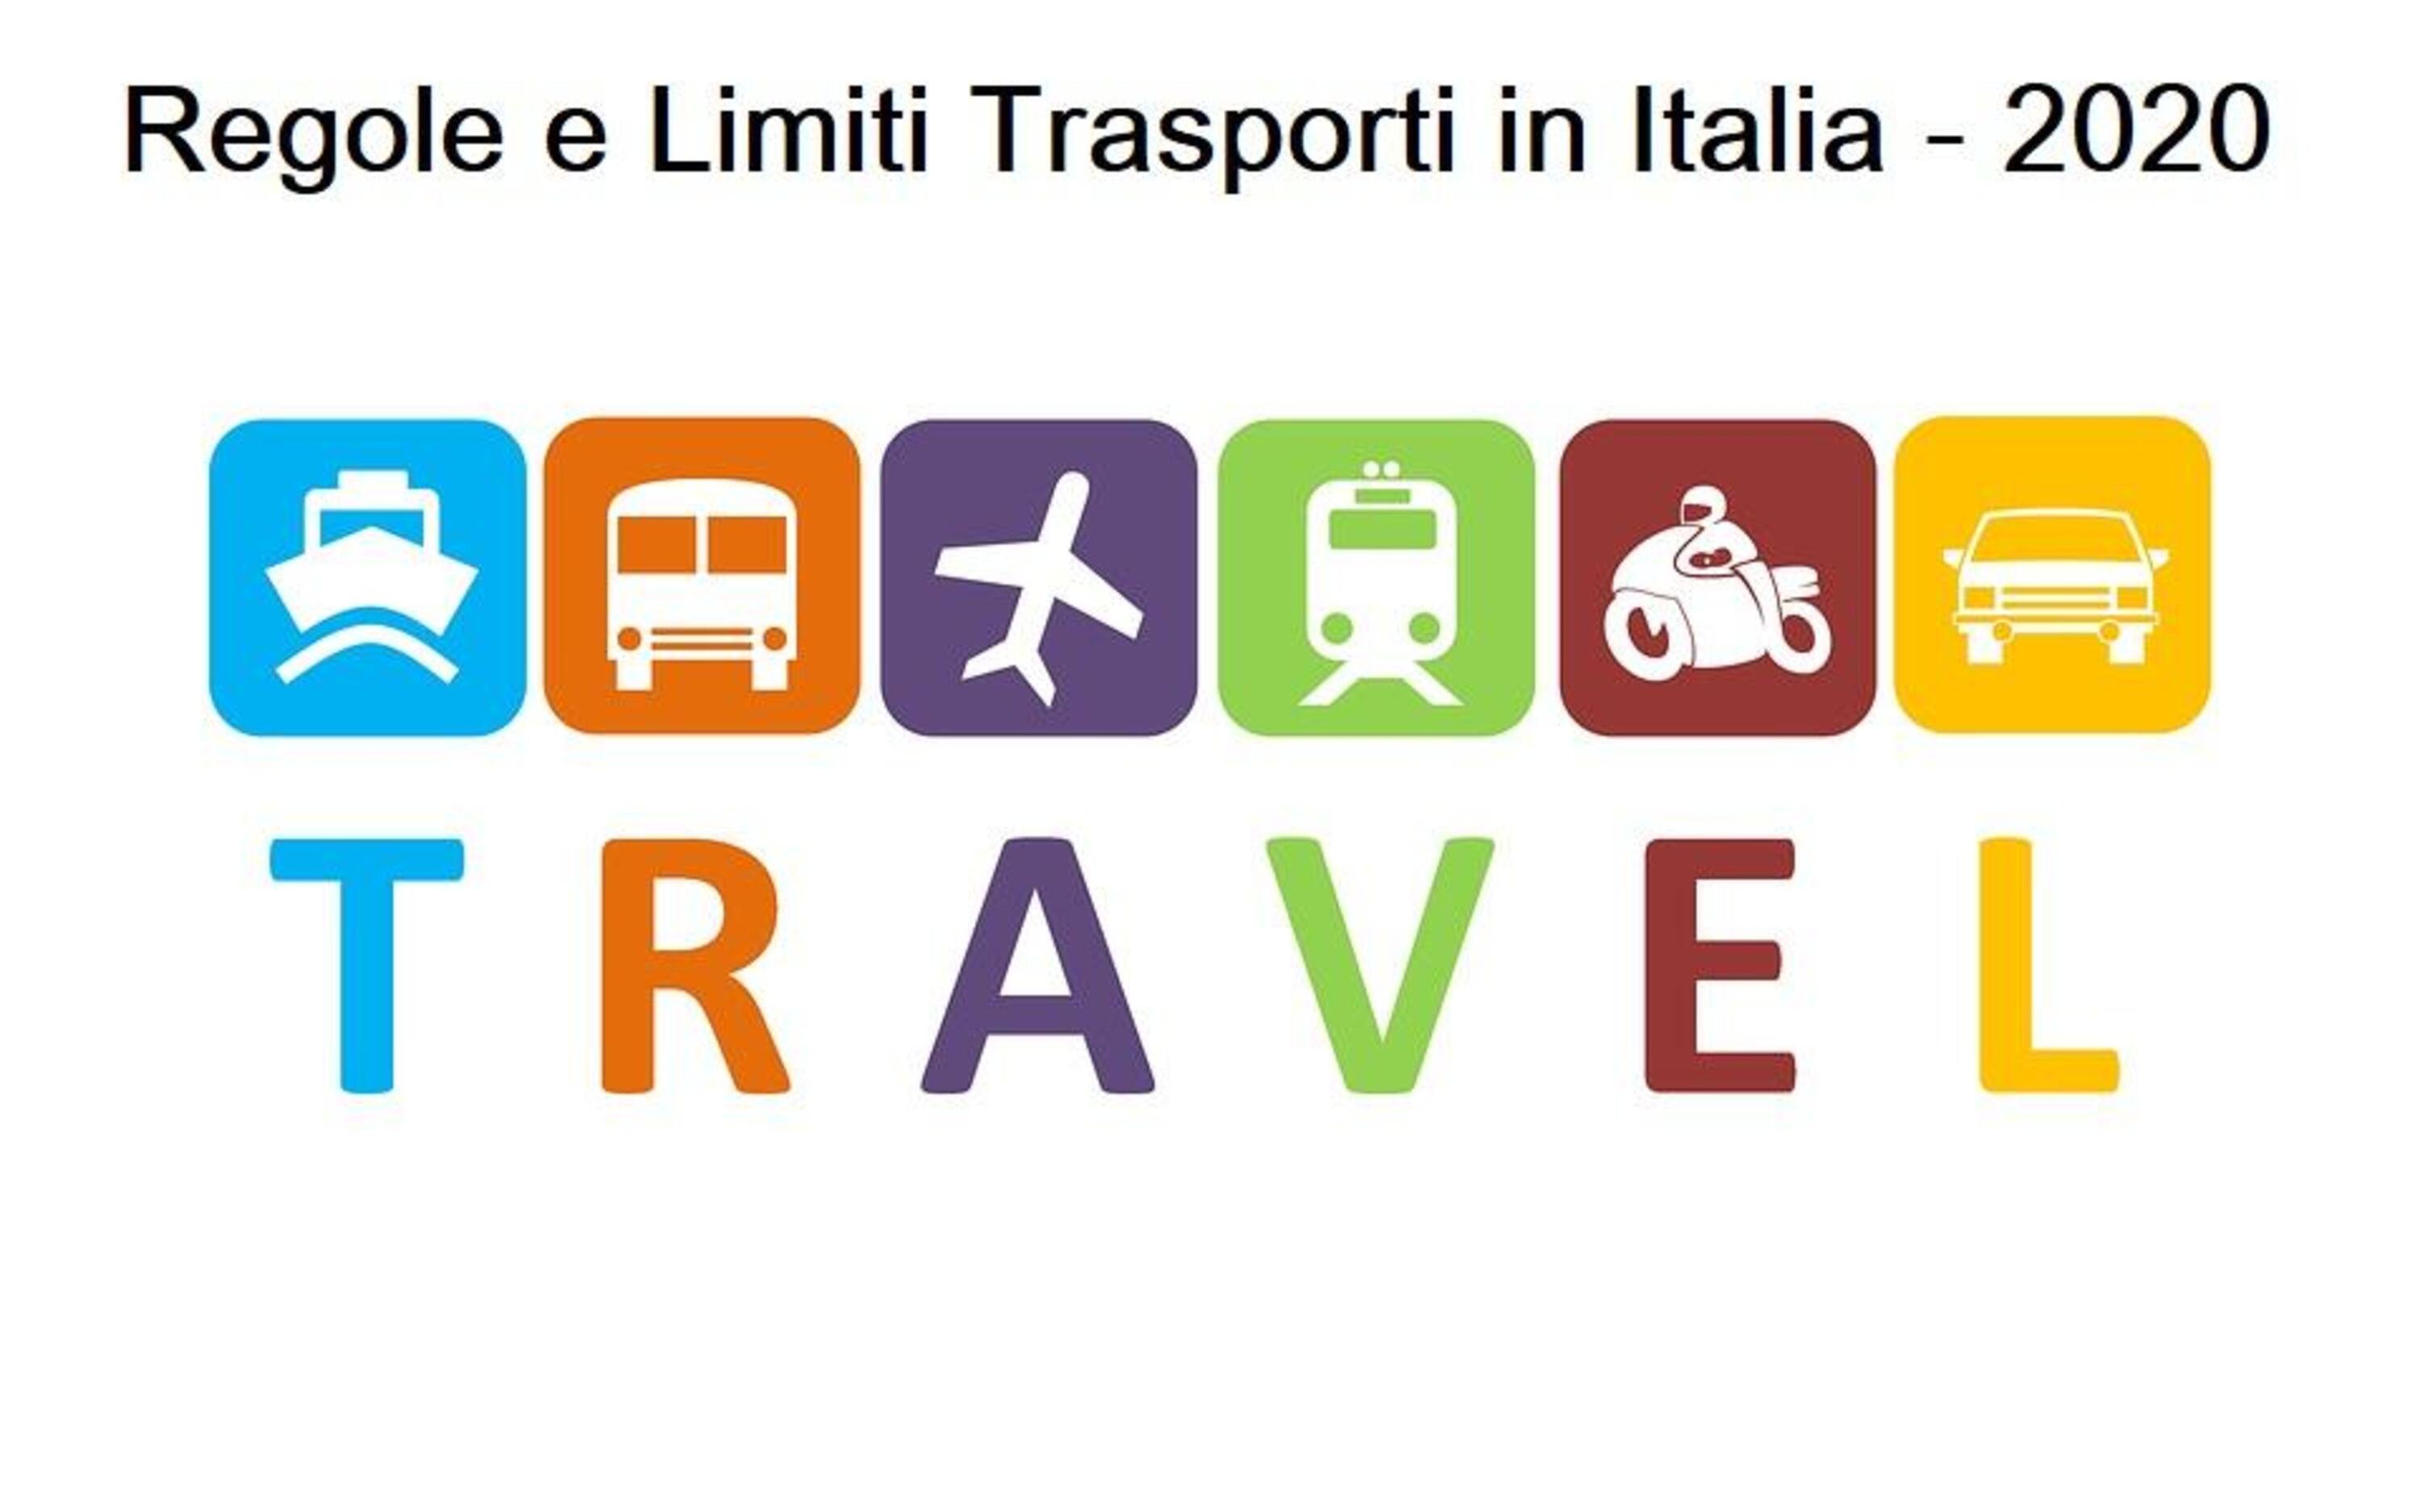 Tra malcontento e gente ormai fuori casa ogni giorno, ecco le nuove regole per i trasporti in Italia: aerei, barche e treni limitati fino a maggio